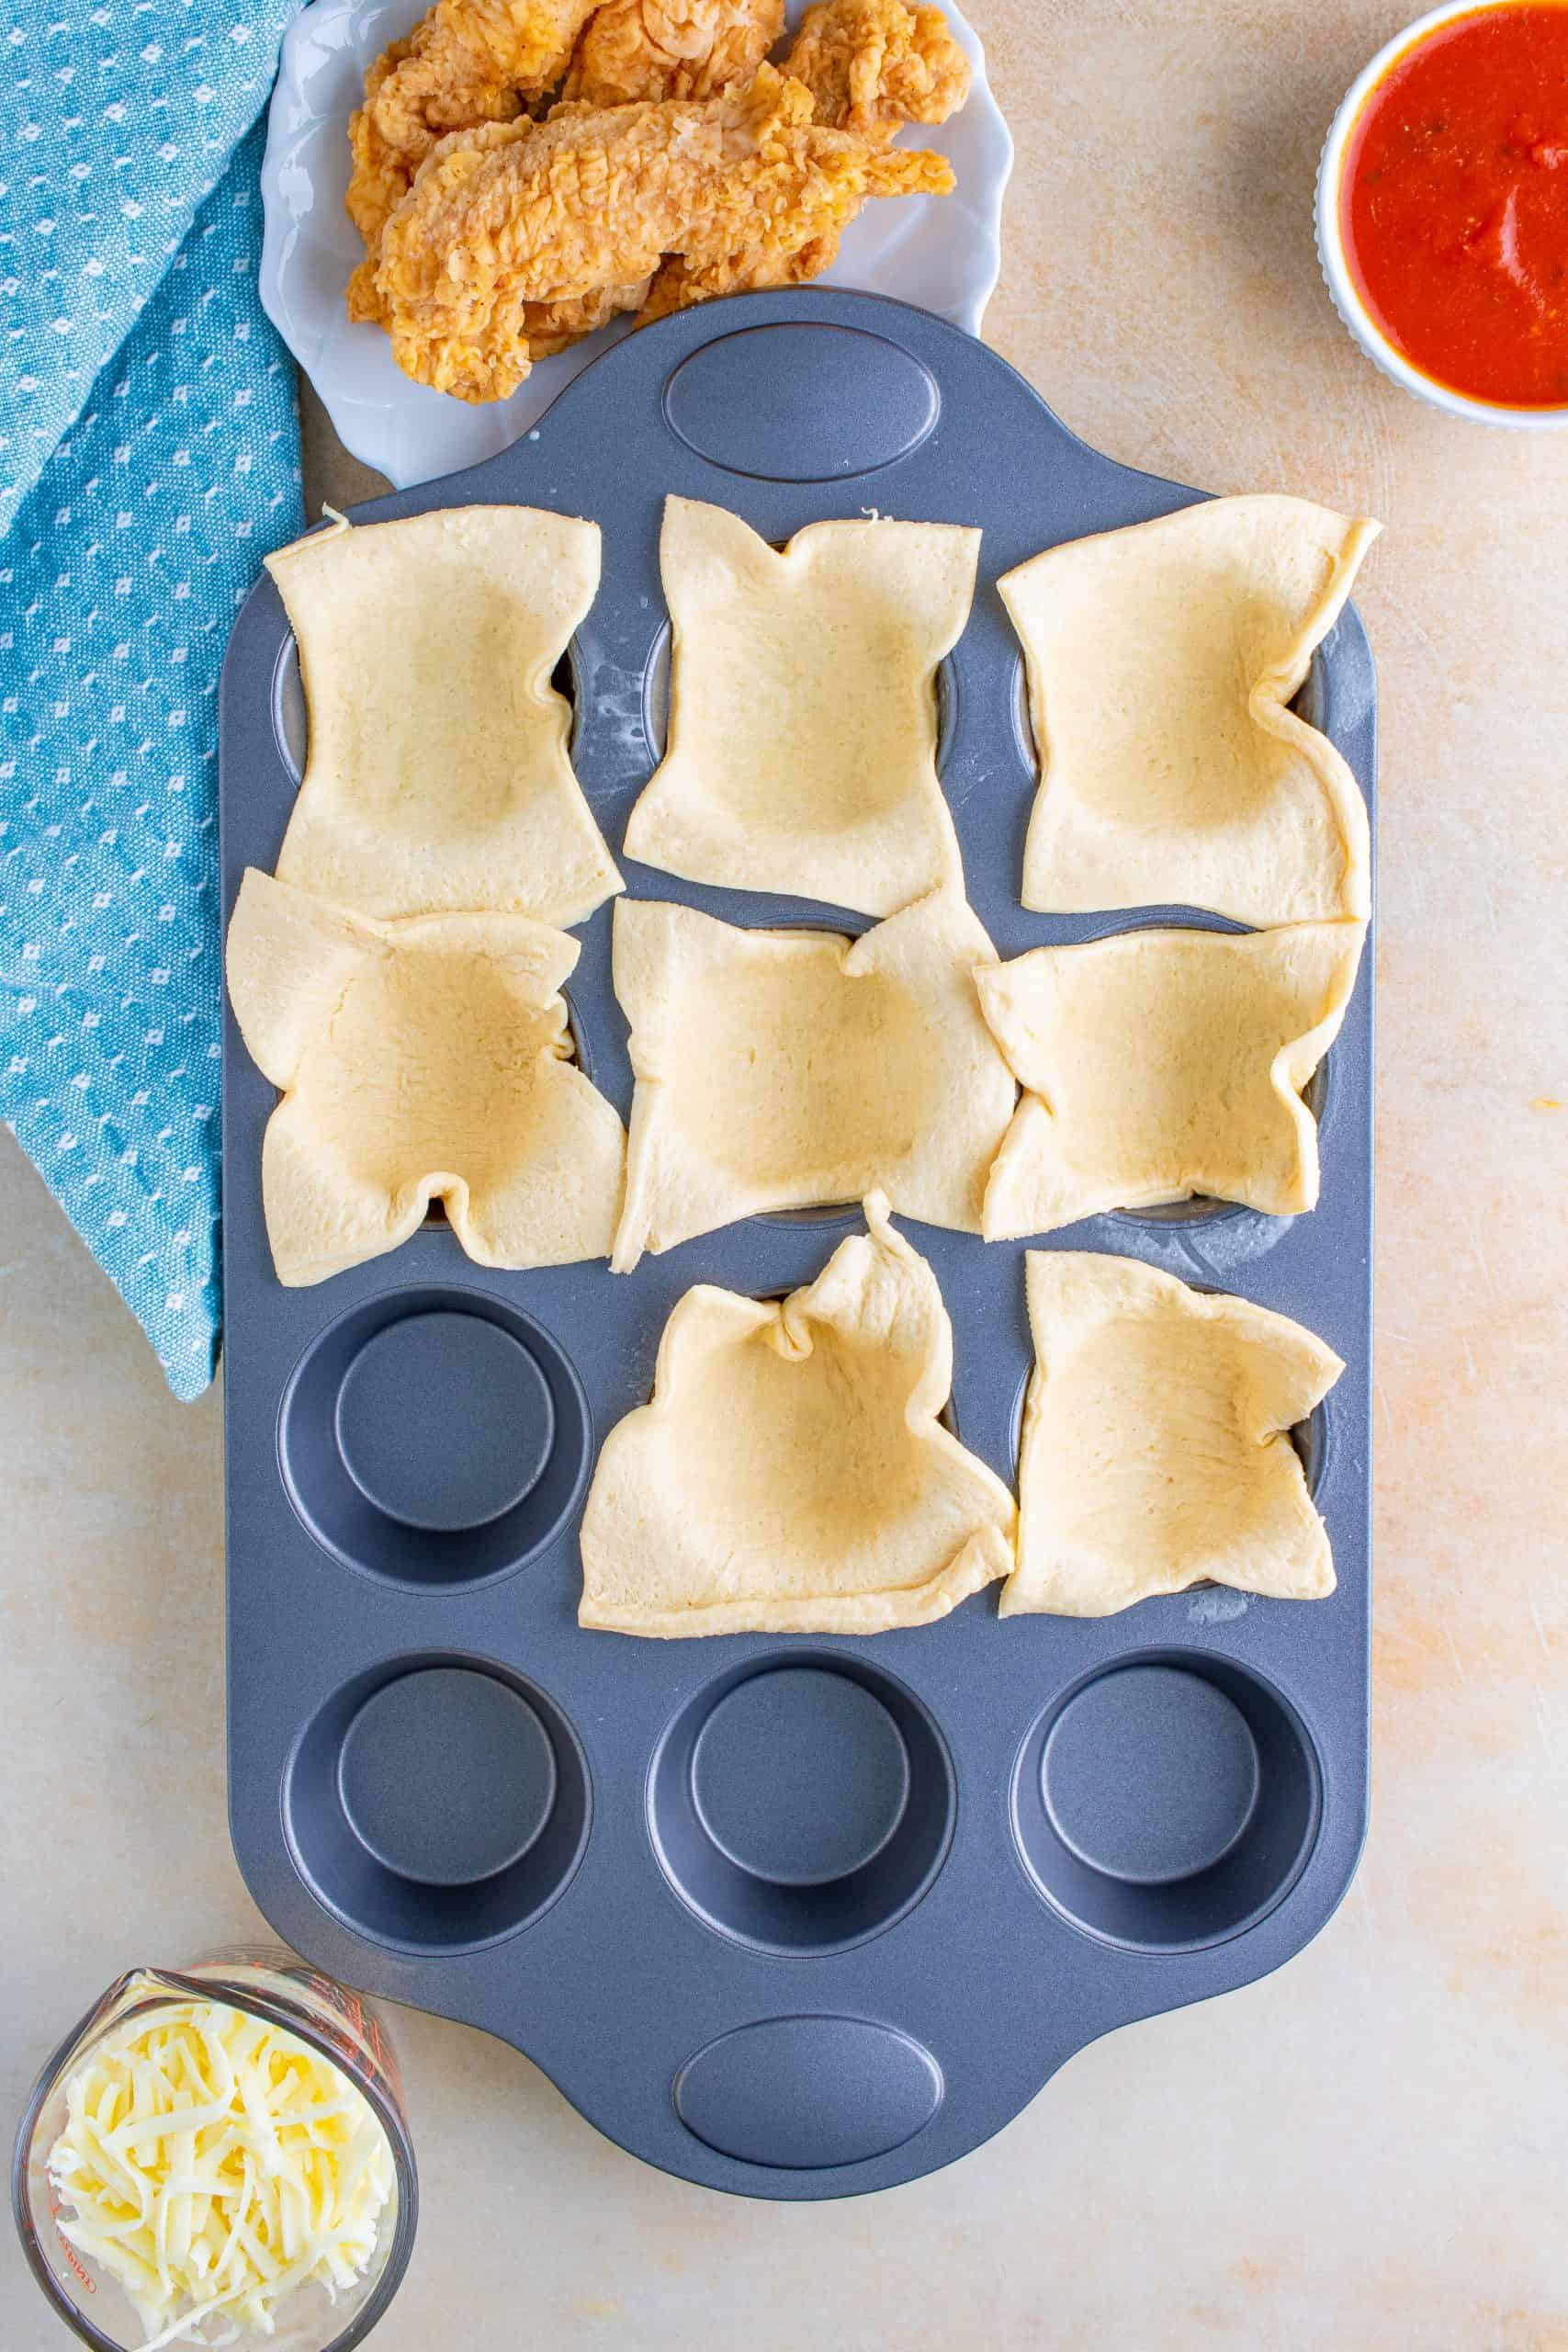 Cut crescent rolls in muffin tin.